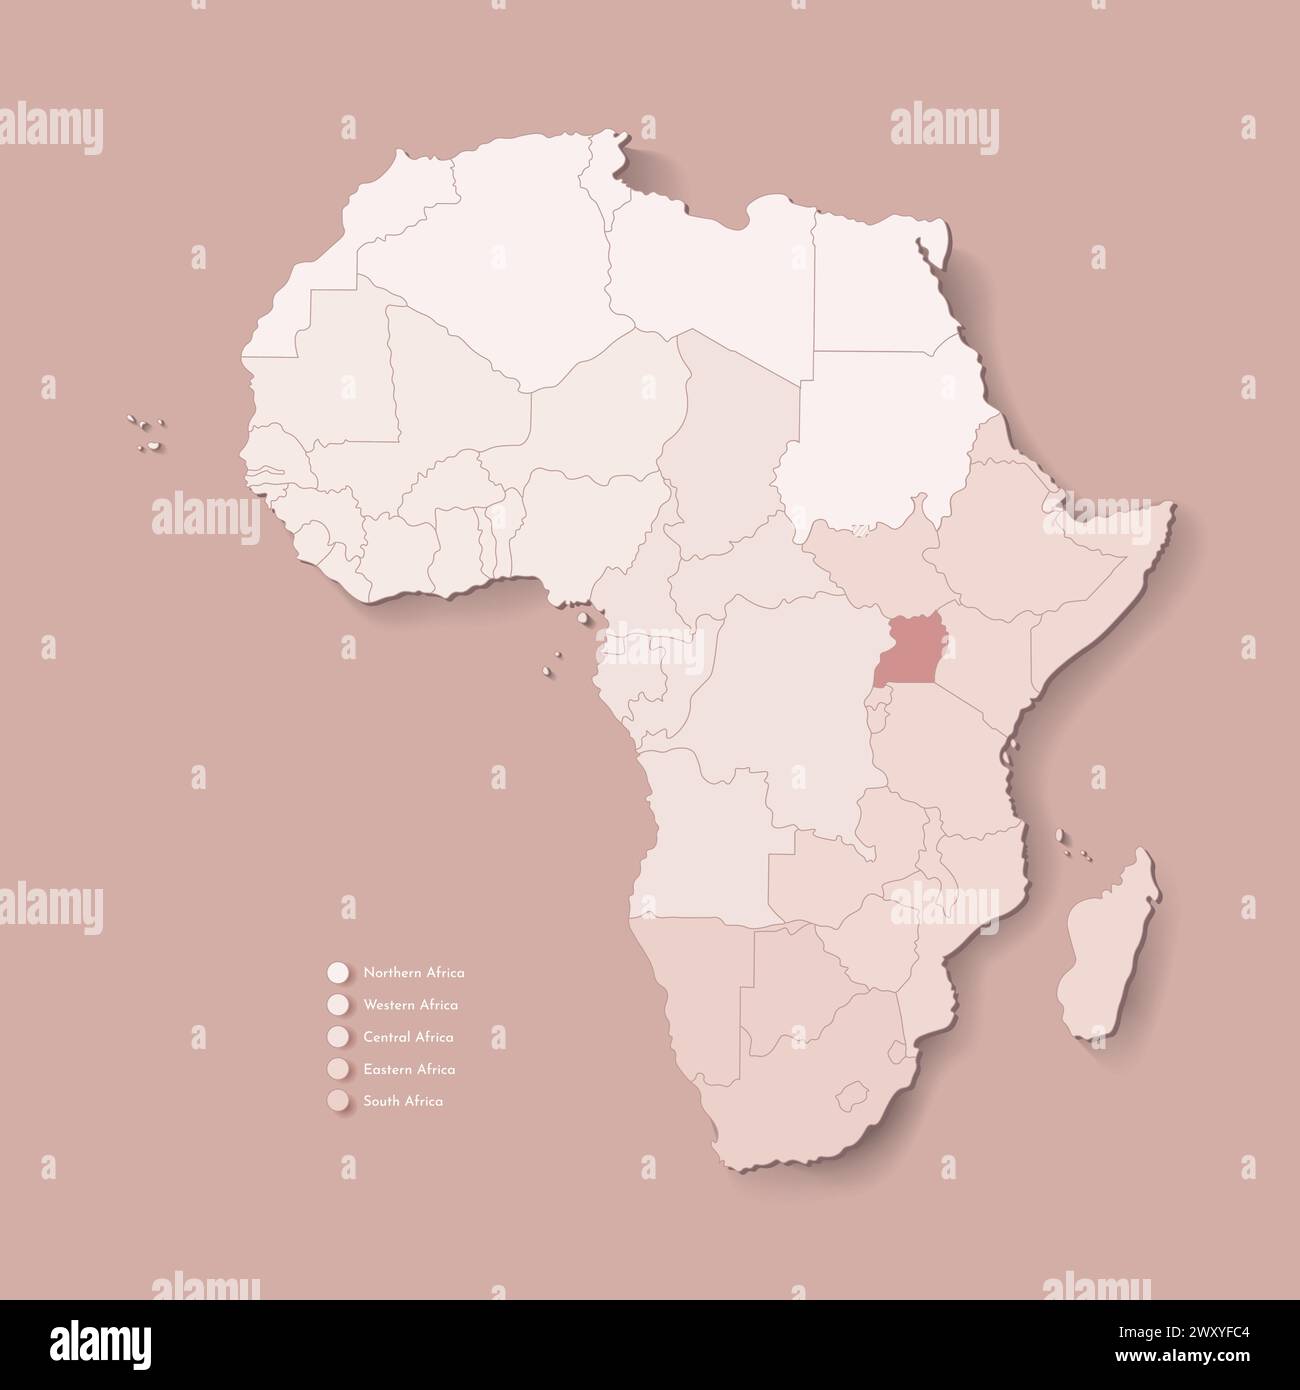 Illustrazione vettoriale con continente africano con confini di tutti gli stati e paese marcato Uganda. Mappa politica di colore marrone con occidentale, sud e. Illustrazione Vettoriale